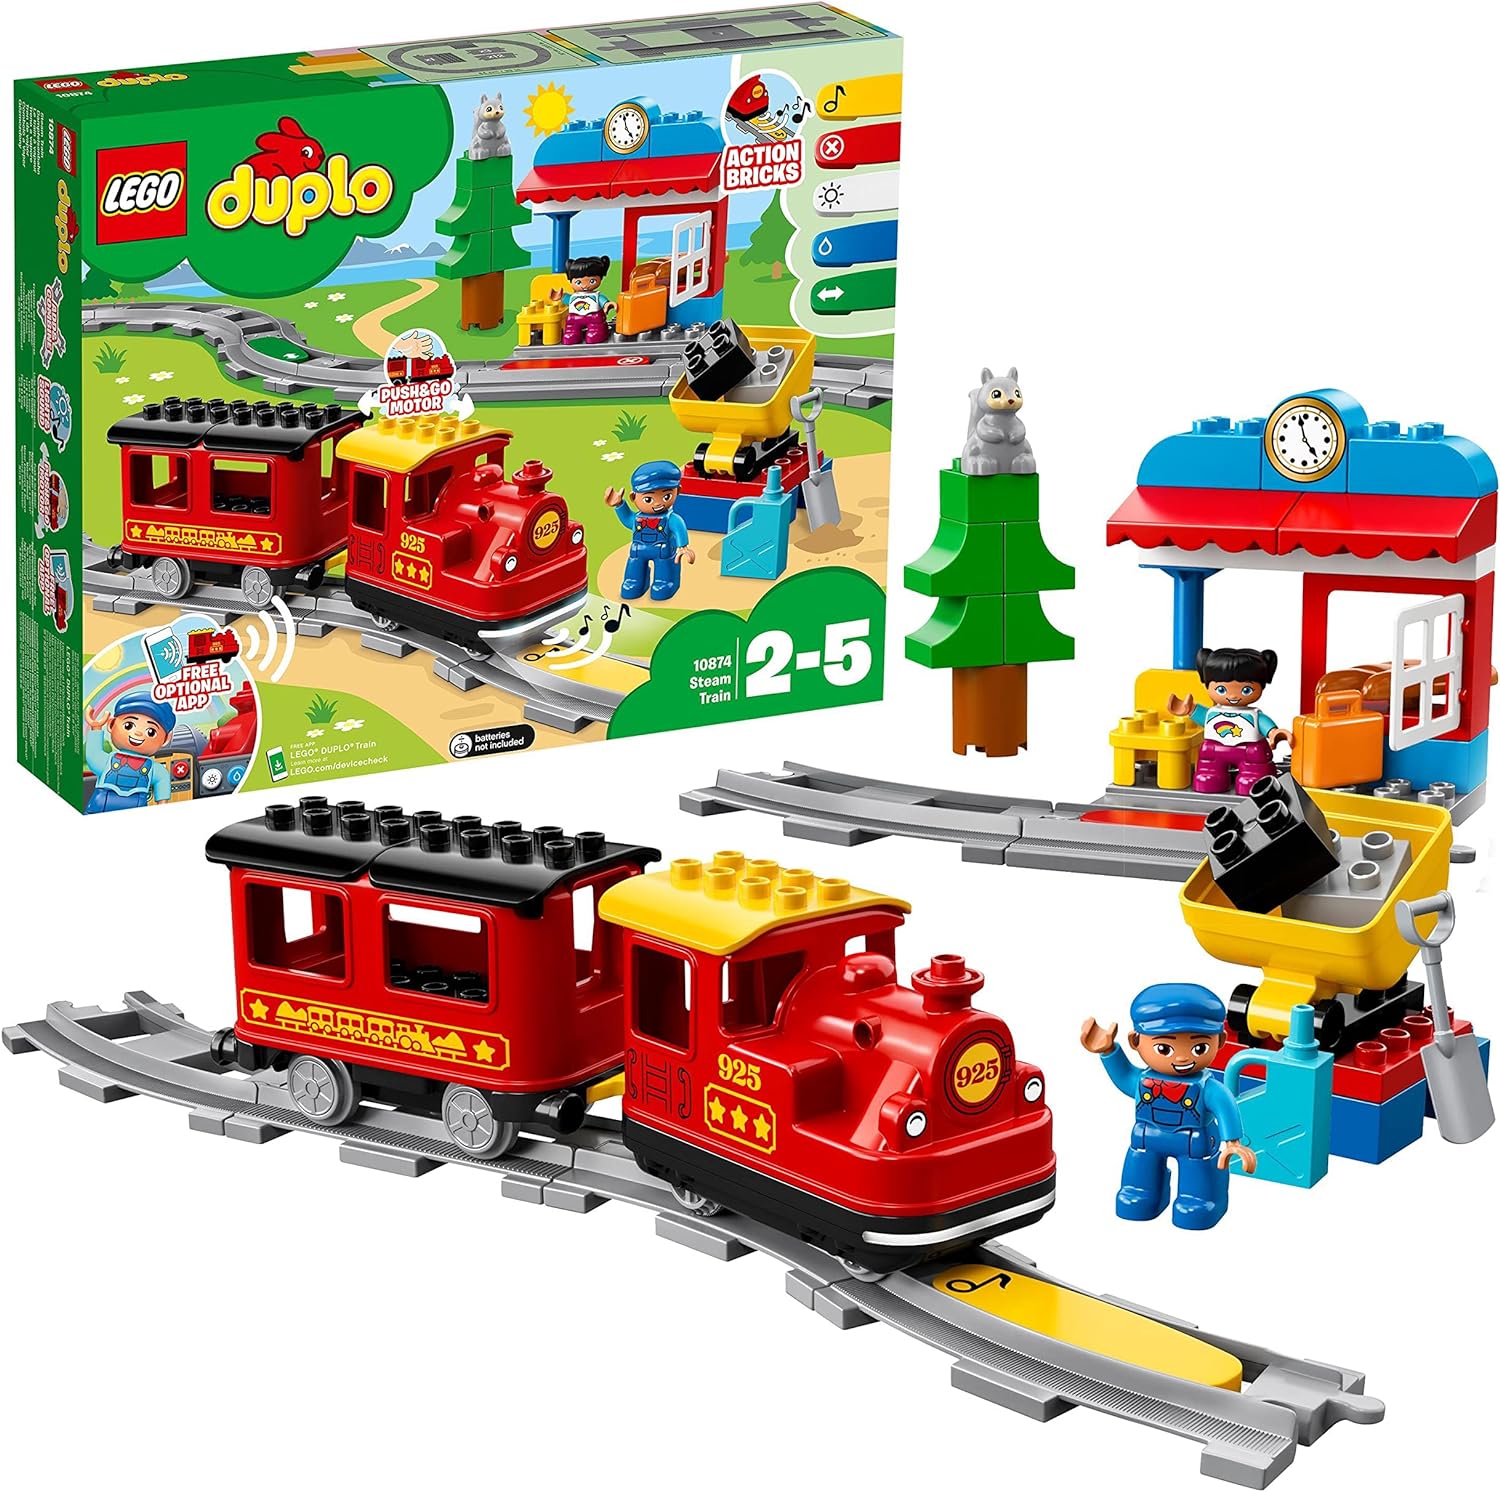 LEGO DUPLO 10874 Dampfeisenbahn Eisenbahn Spielzeug mit Tierfigur Zug-Spielzeug Push-&-Go-Motor LEGO-Sets LEGO Steine Bausteine Sets